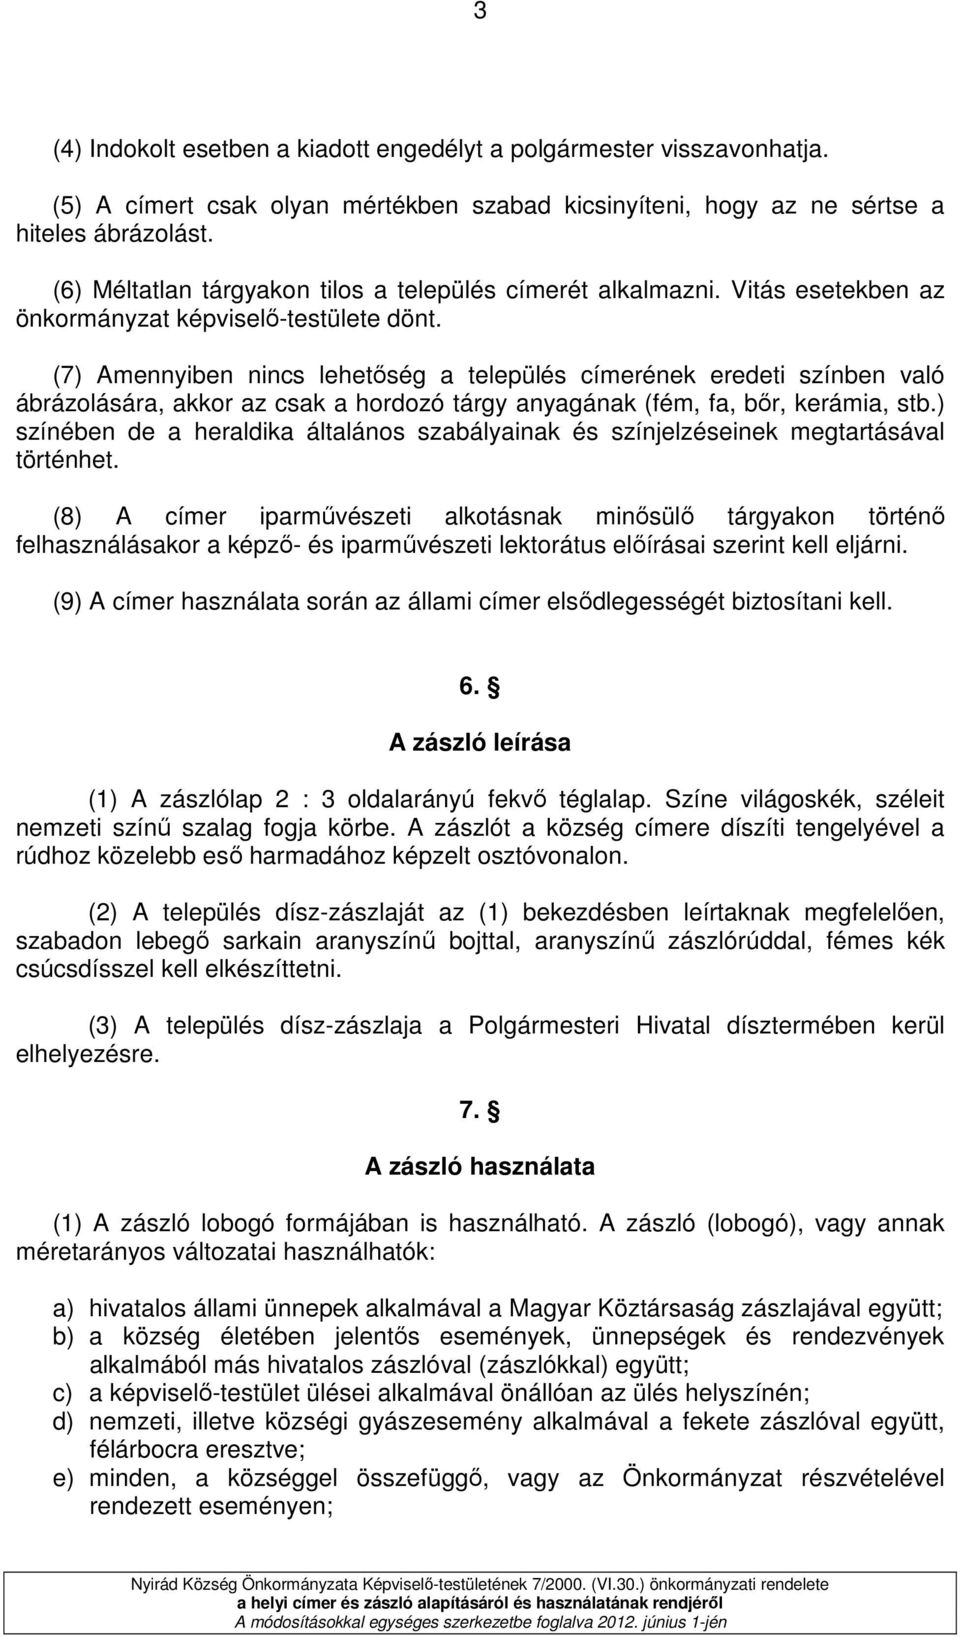 (7) Amennyiben nincs lehetıség a település címerének eredeti színben való ábrázolására, akkor az csak a hordozó tárgy anyagának (fém, fa, bır, kerámia, stb.